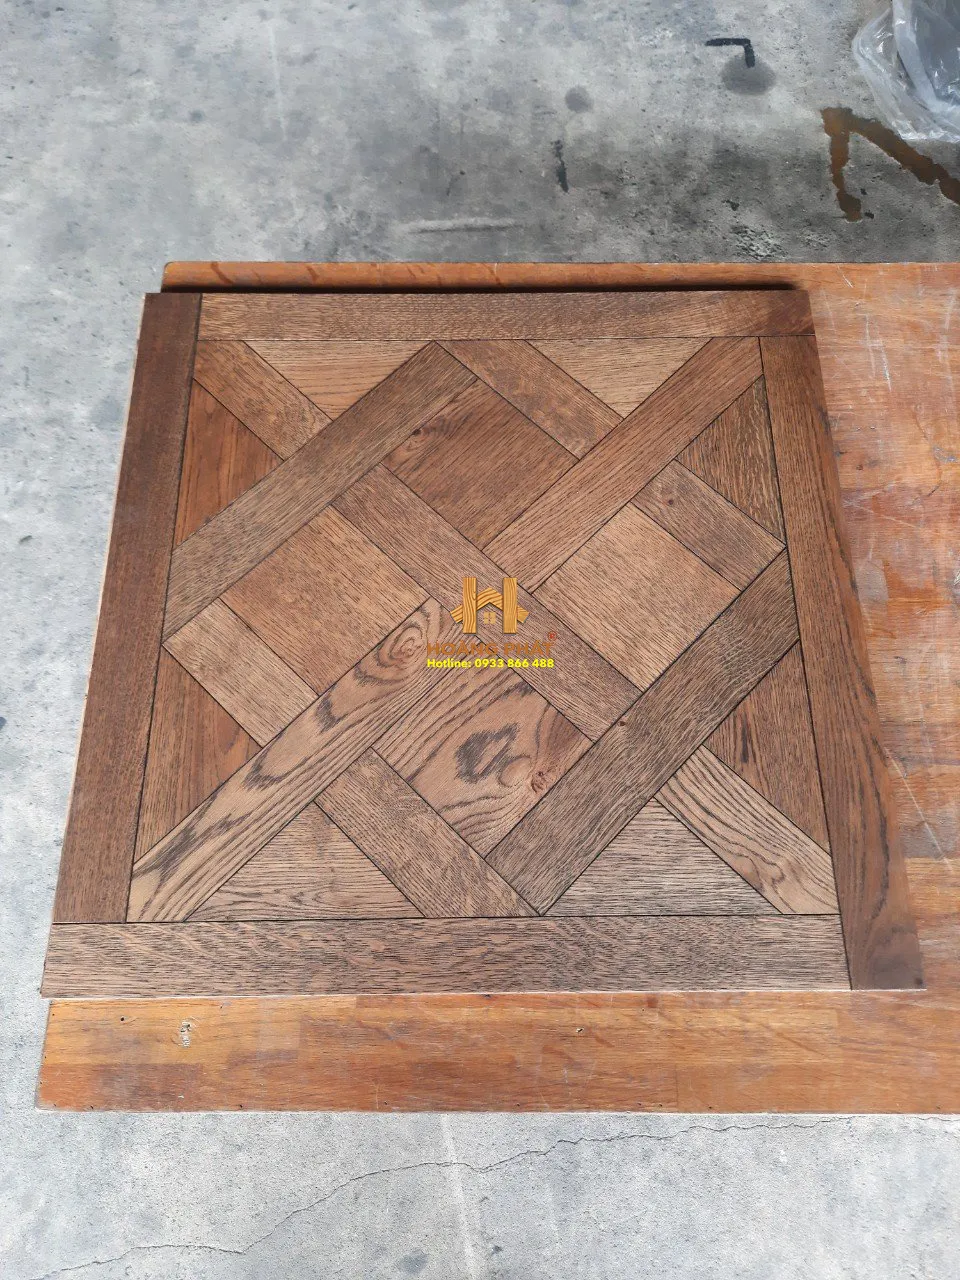 Sàn gỗ Hoa Văn cao cấp do Hoàng Phát sản xuất